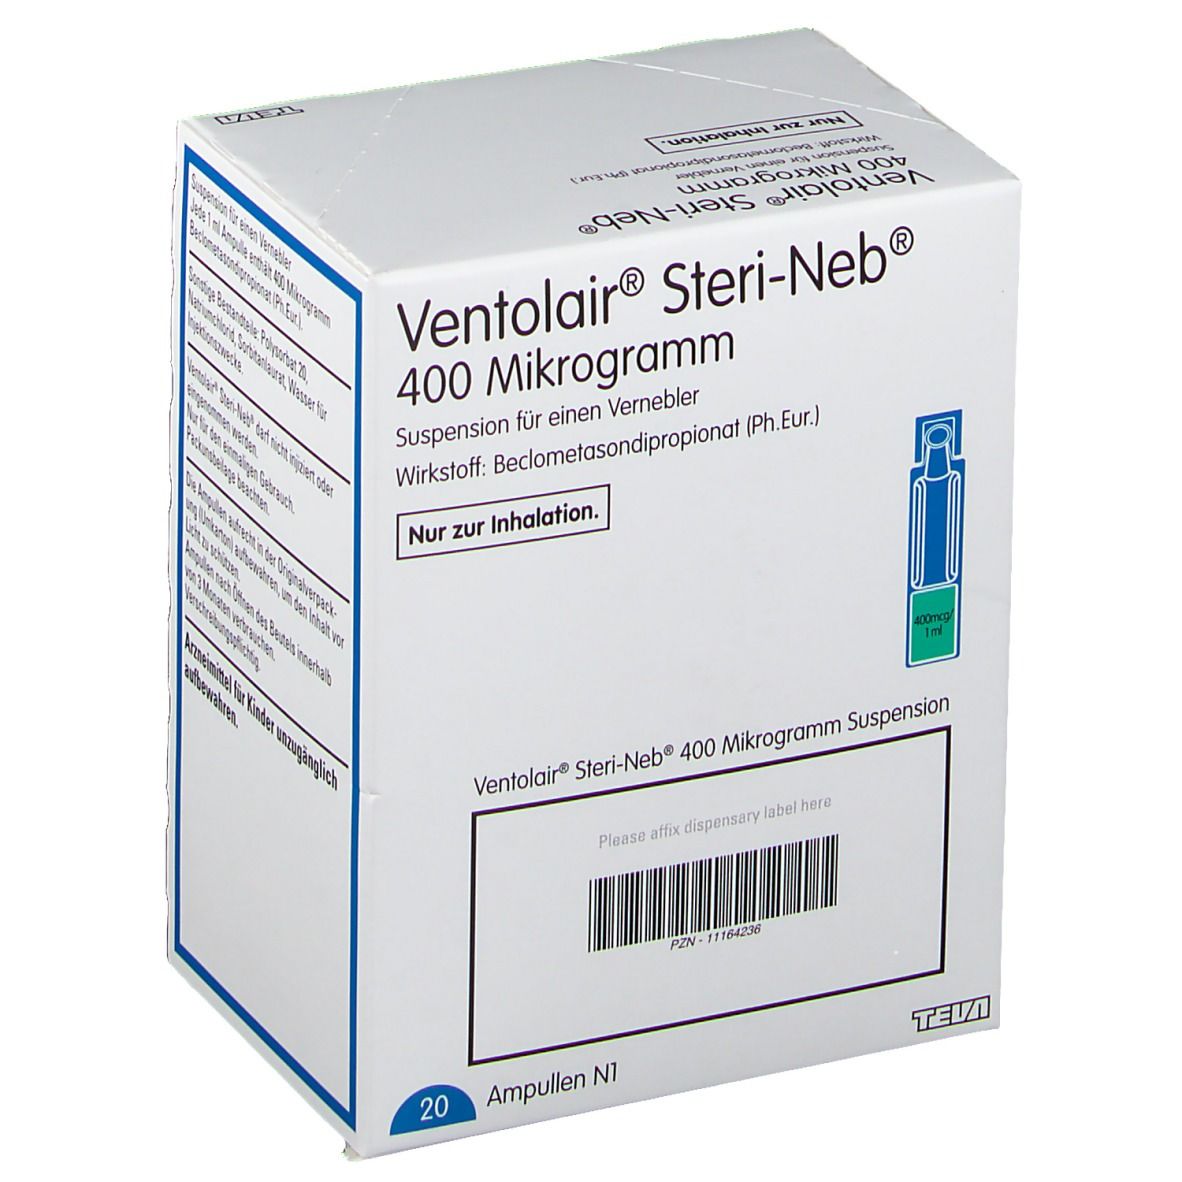 Ventolair® Steri-Neb® 400 µg